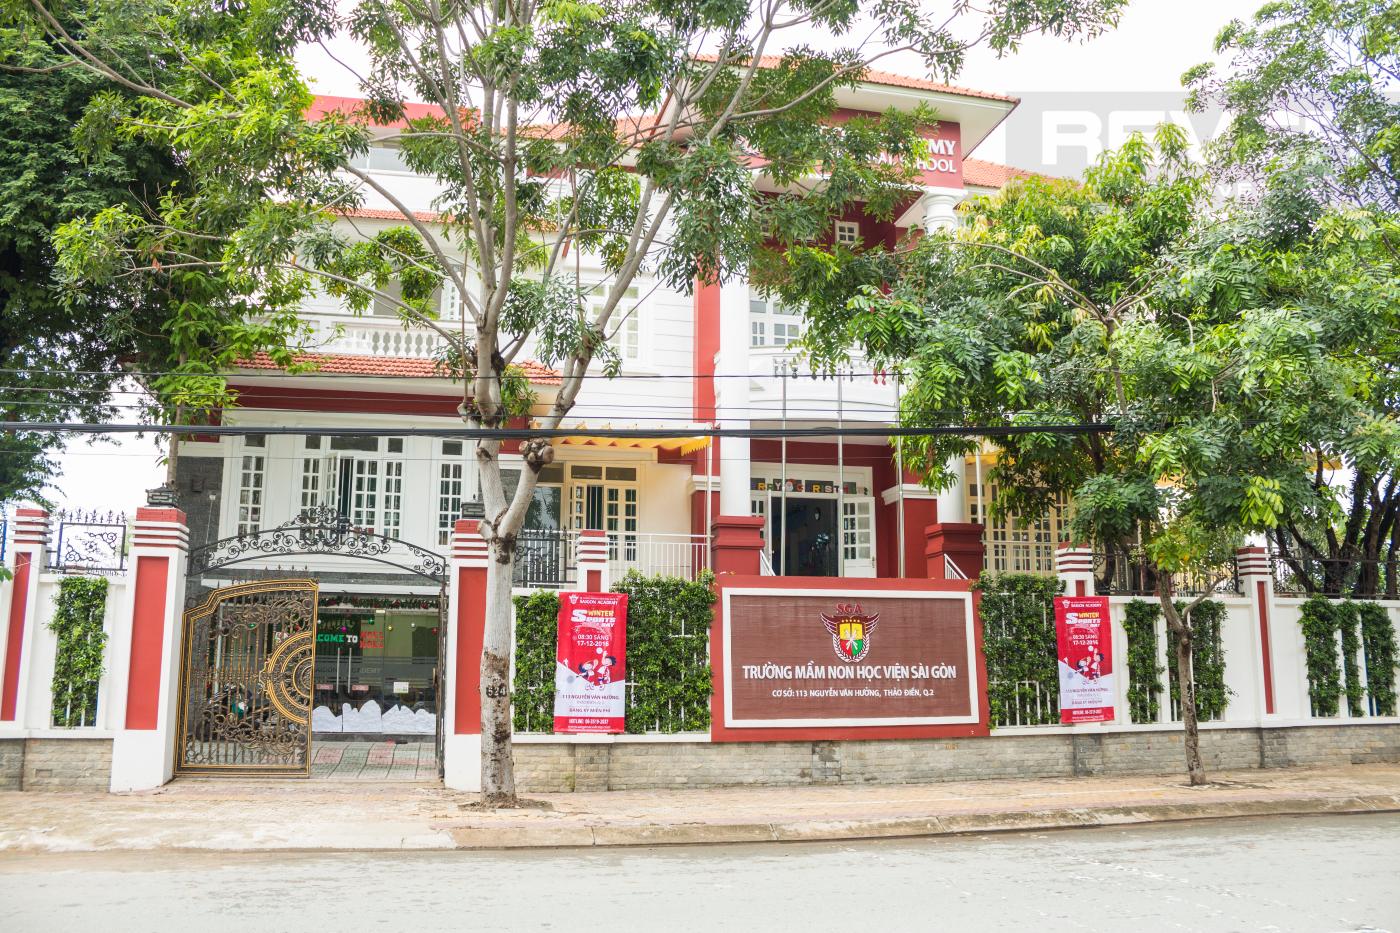 Trường mầm non học viện Sài Gòn.jpg